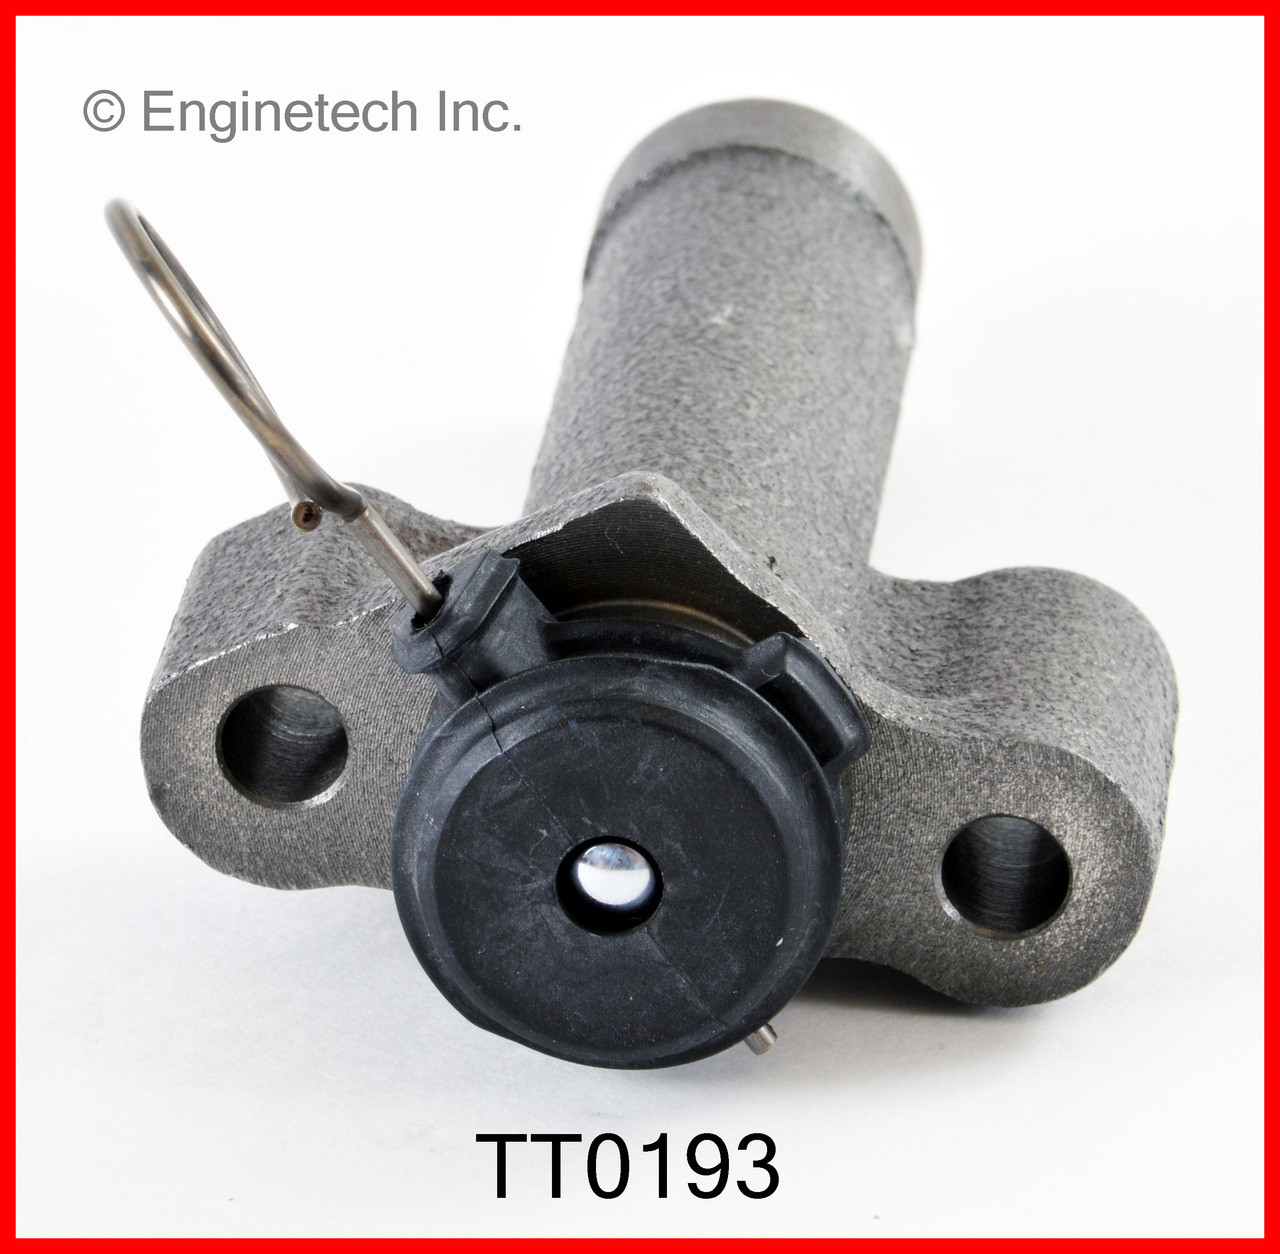 Timing Belt Tensioner - 1993 Toyota T100 3.0L (TT0193.B12)